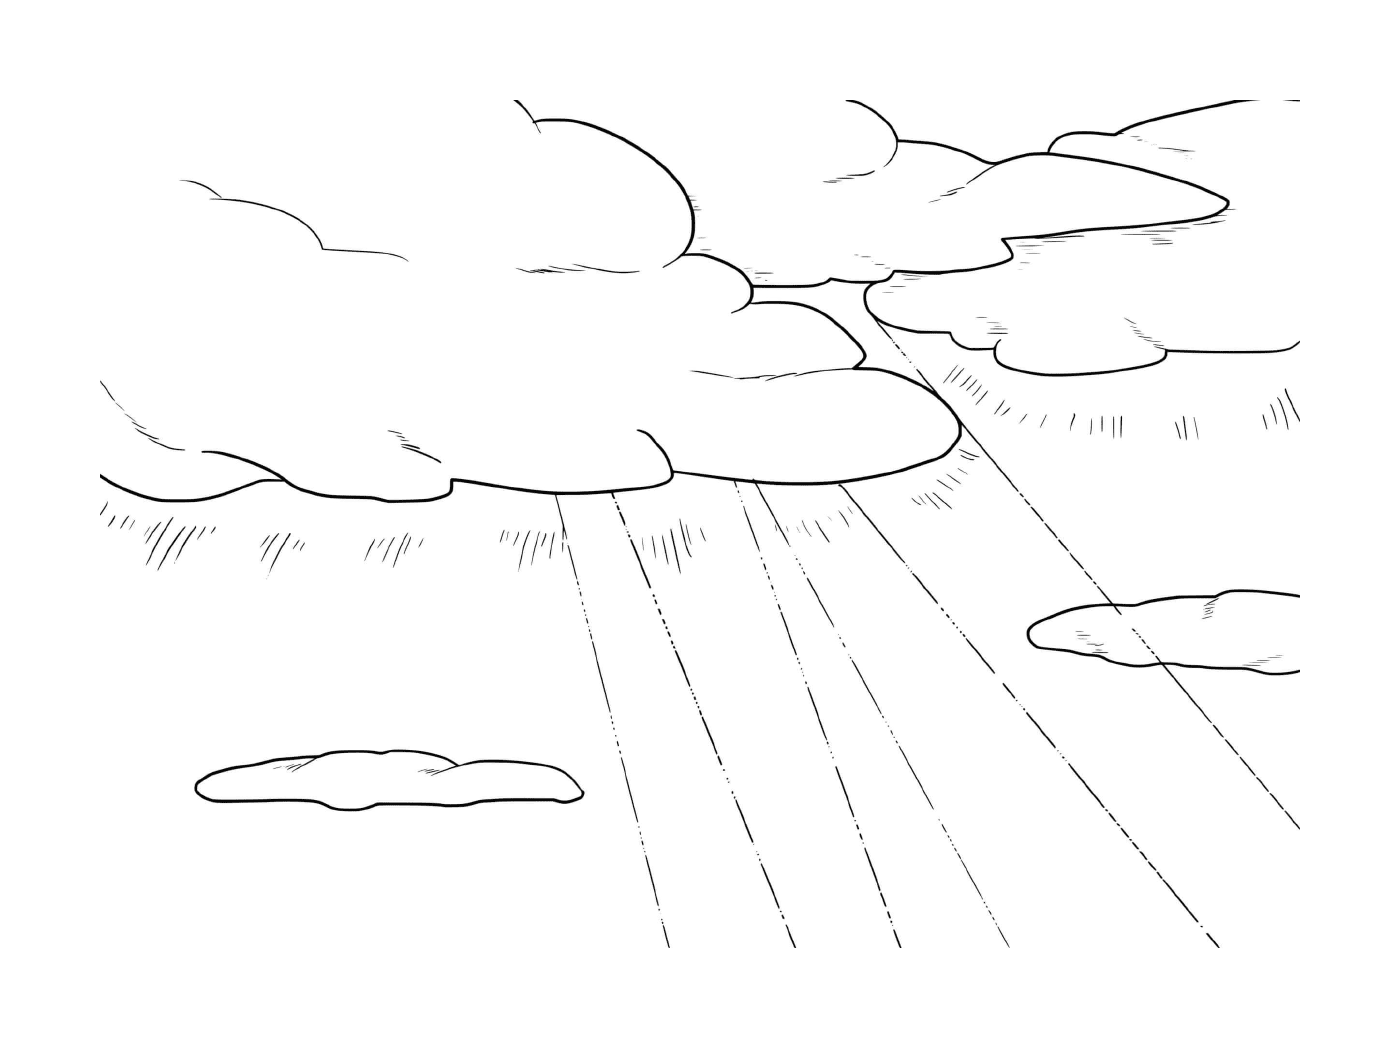  Trasfigurazione, linea e cielo con nuvole 